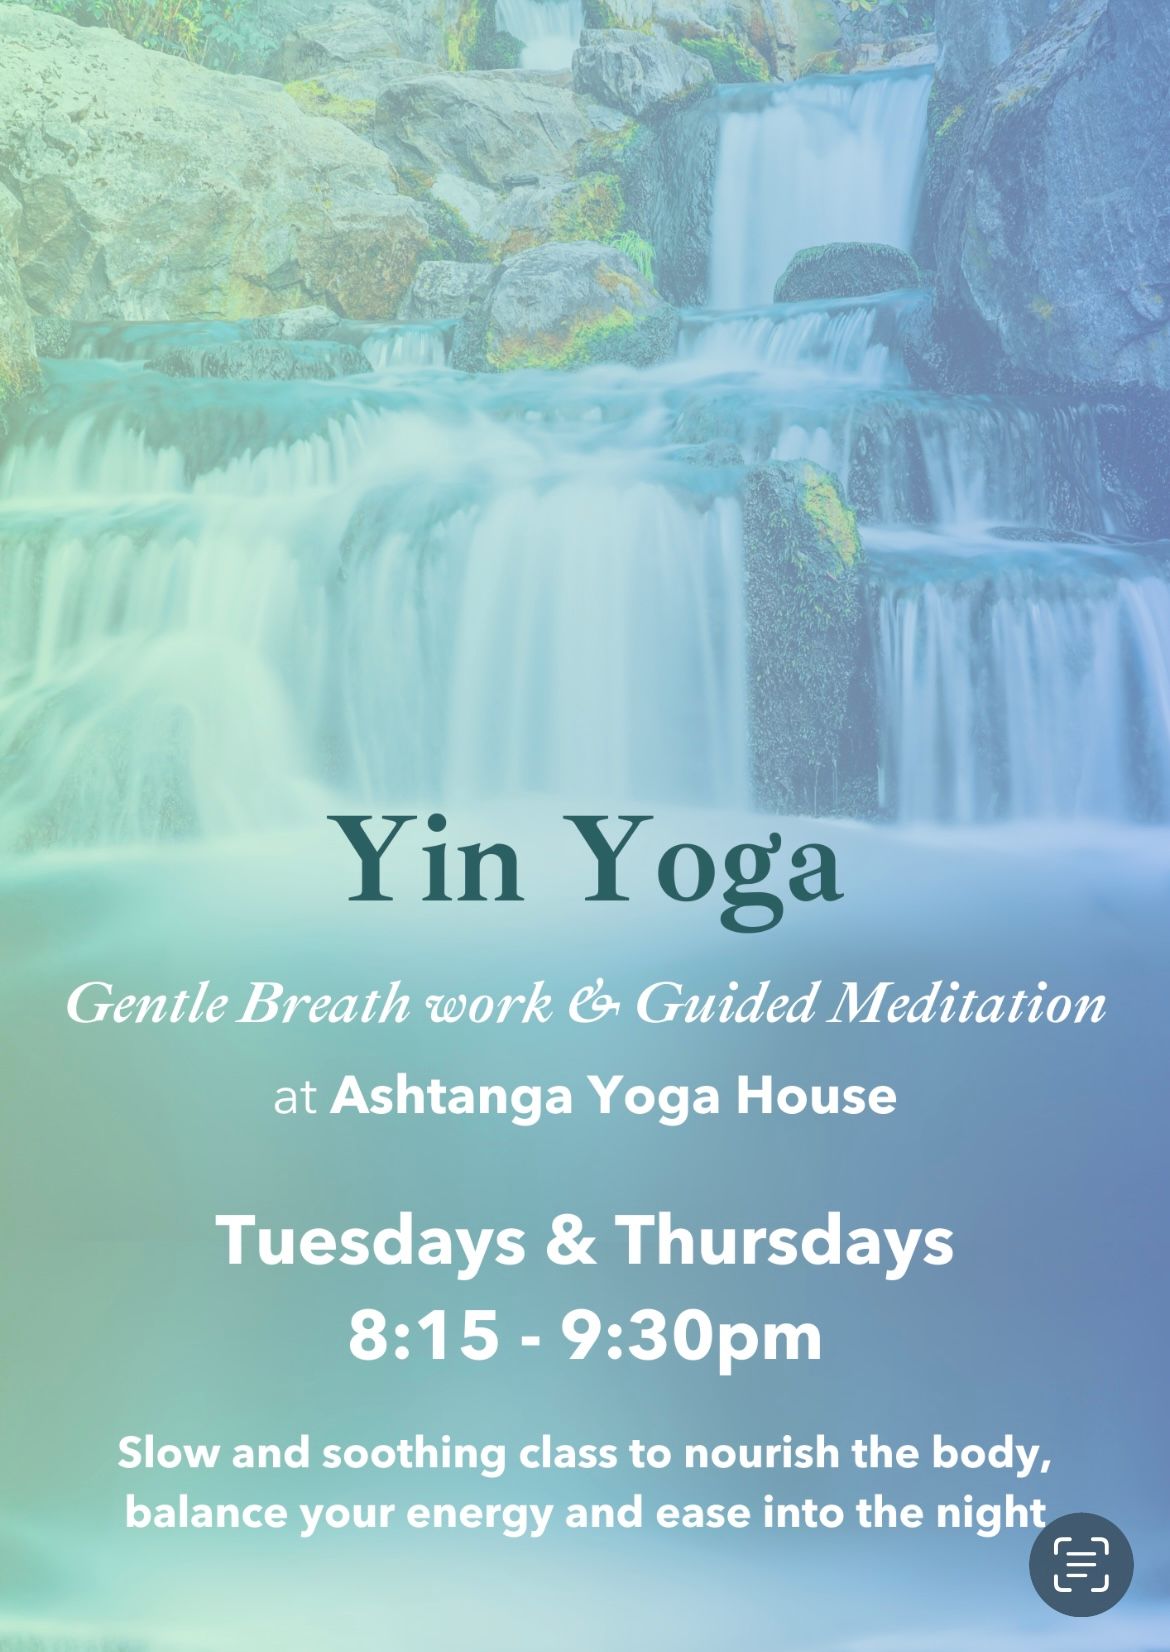 Yin Yoga, Gentle Breathwork & Guided Meditation